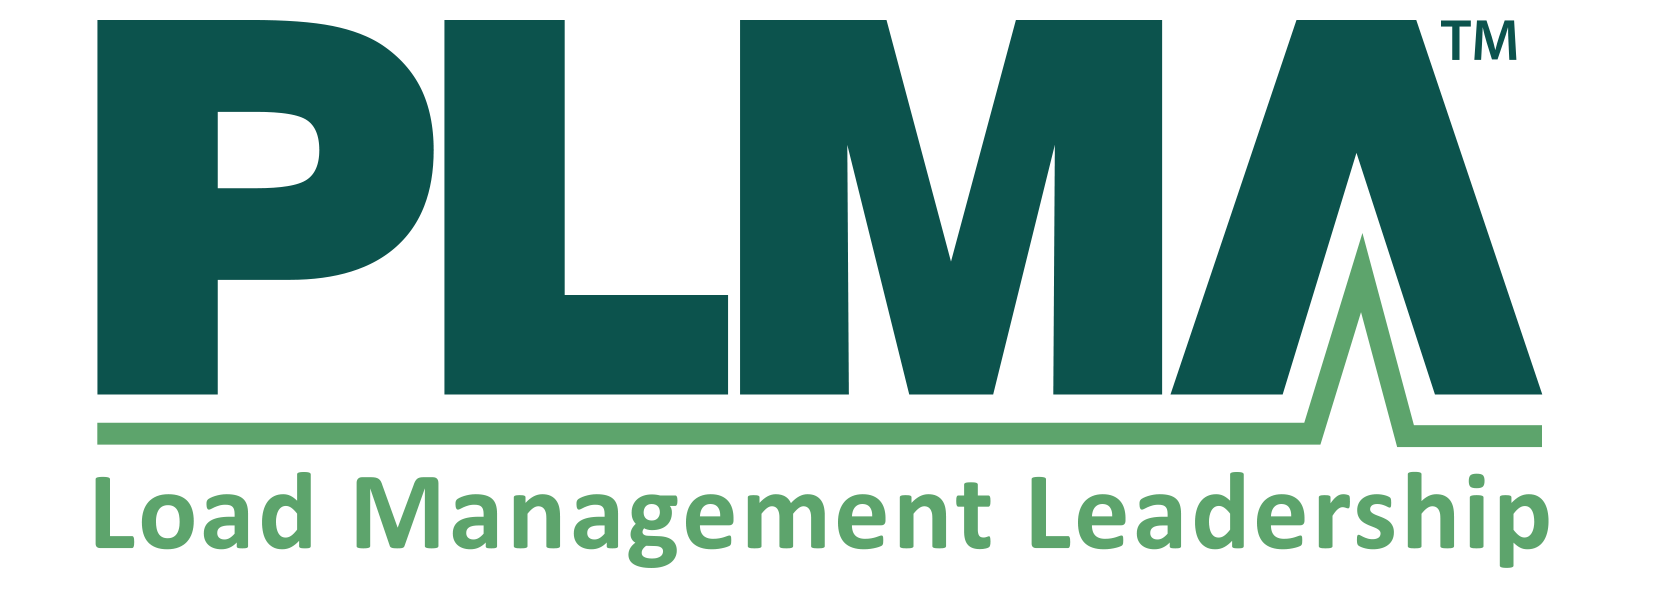 PLMA logo 4 color 071918.png